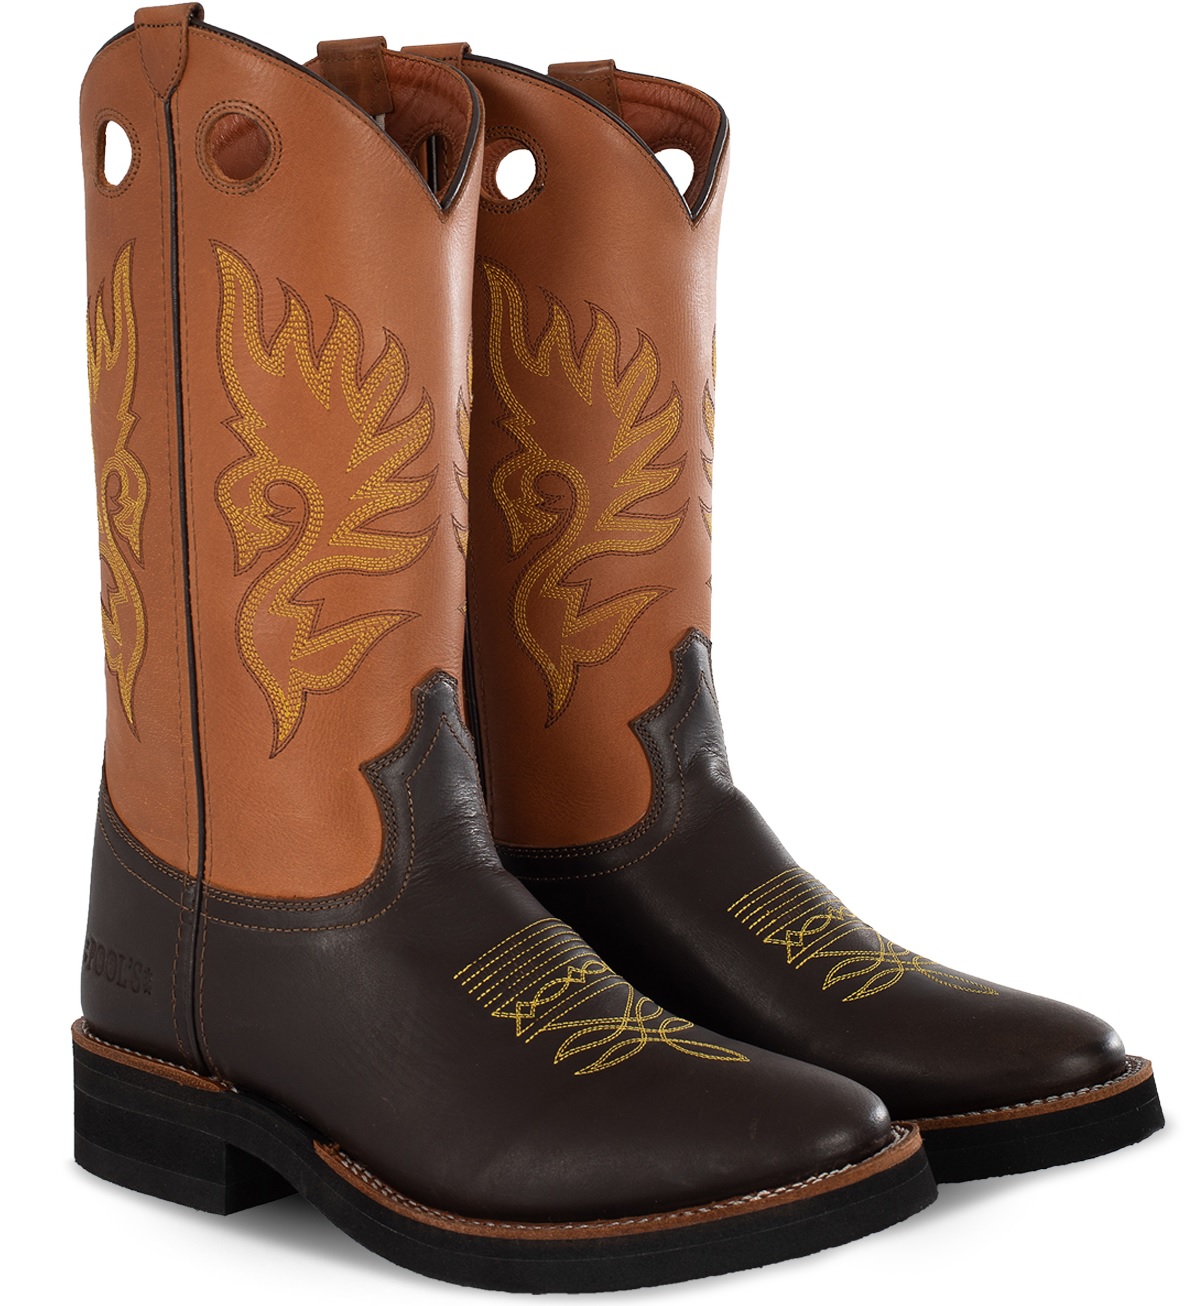 LAKOTA Boots Western Model “Roper ” EQ200 